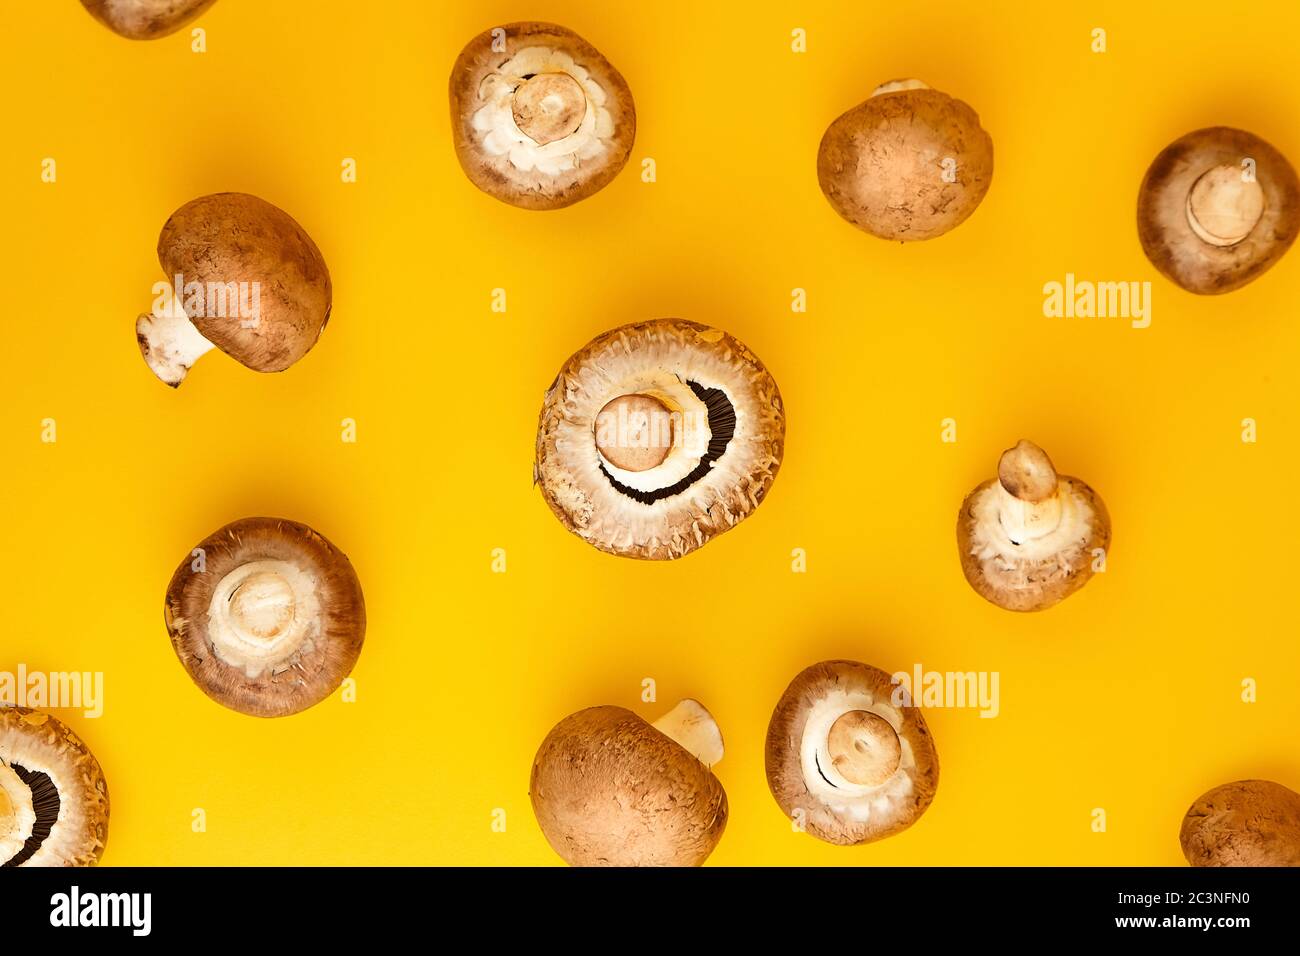 Funghi, champignons marroni freschi sparsi su uno sfondo giallo, vista dall'alto. Ingrediente alimentare non fatto a bagno, piatto posare Foto Stock